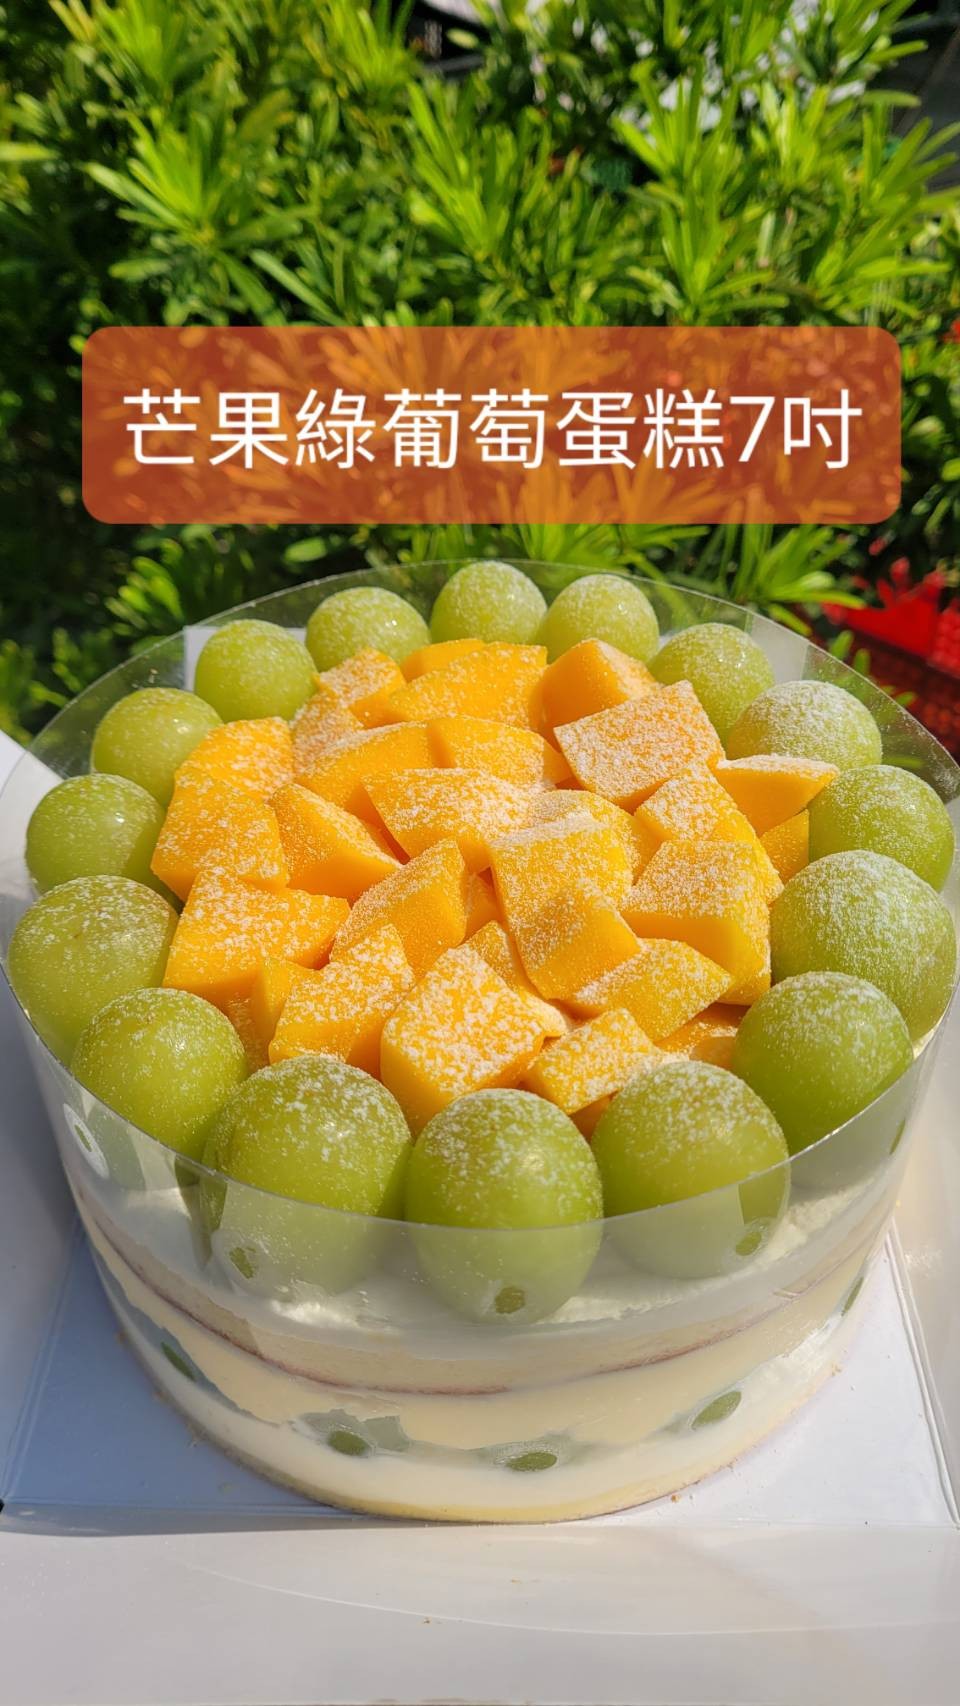 新鮮芒果 綠葡萄蛋糕(7吋圓形)